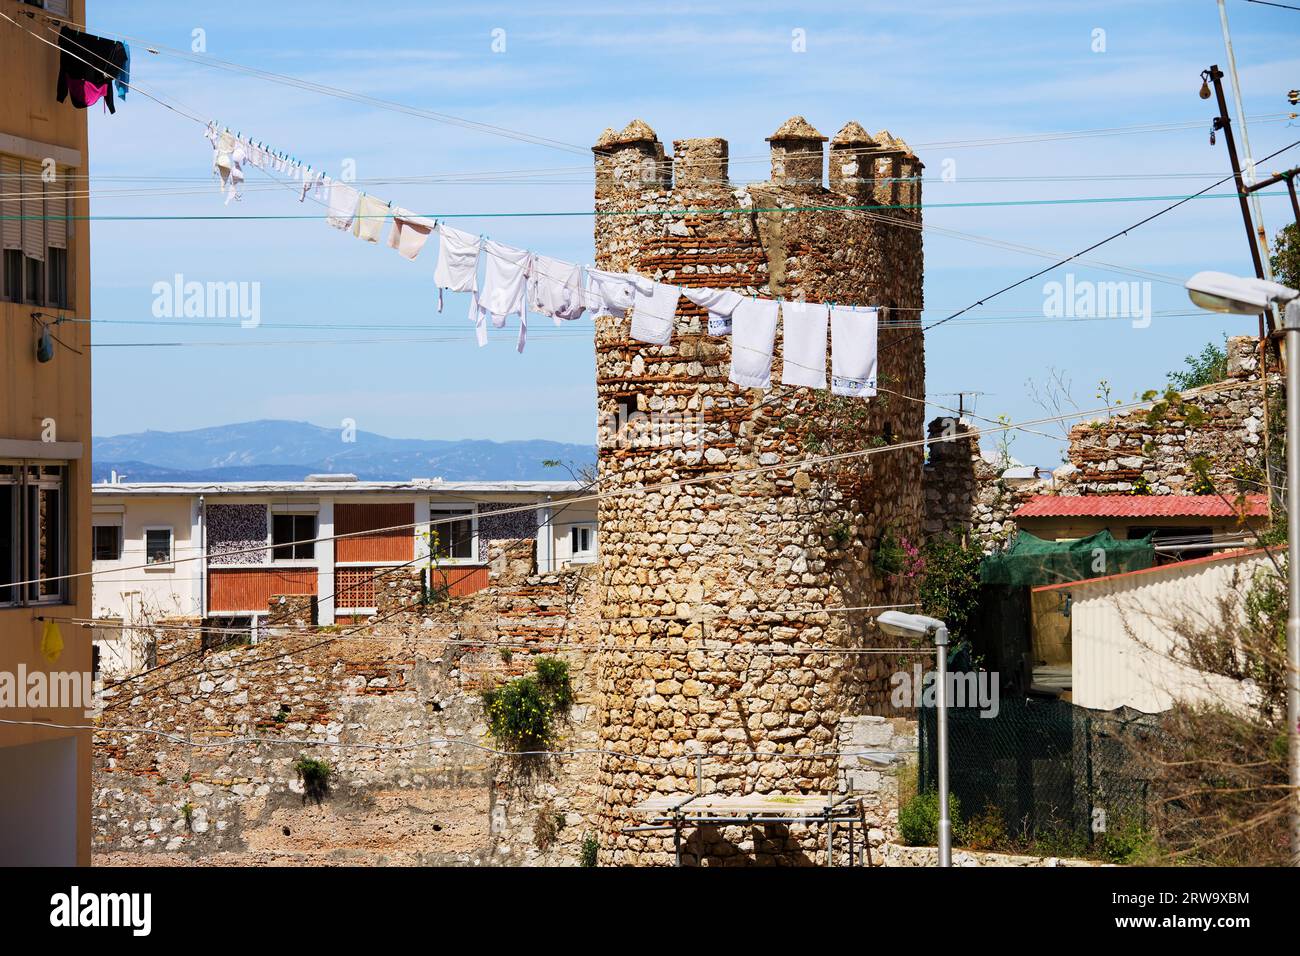 Und der alte maurische Verteidigungsturm und die Mauer, Teil der Befestigungsanlagen in Gibraltar und die Wäsche, die trocken an einer Wäscheleine hängt Stockfoto